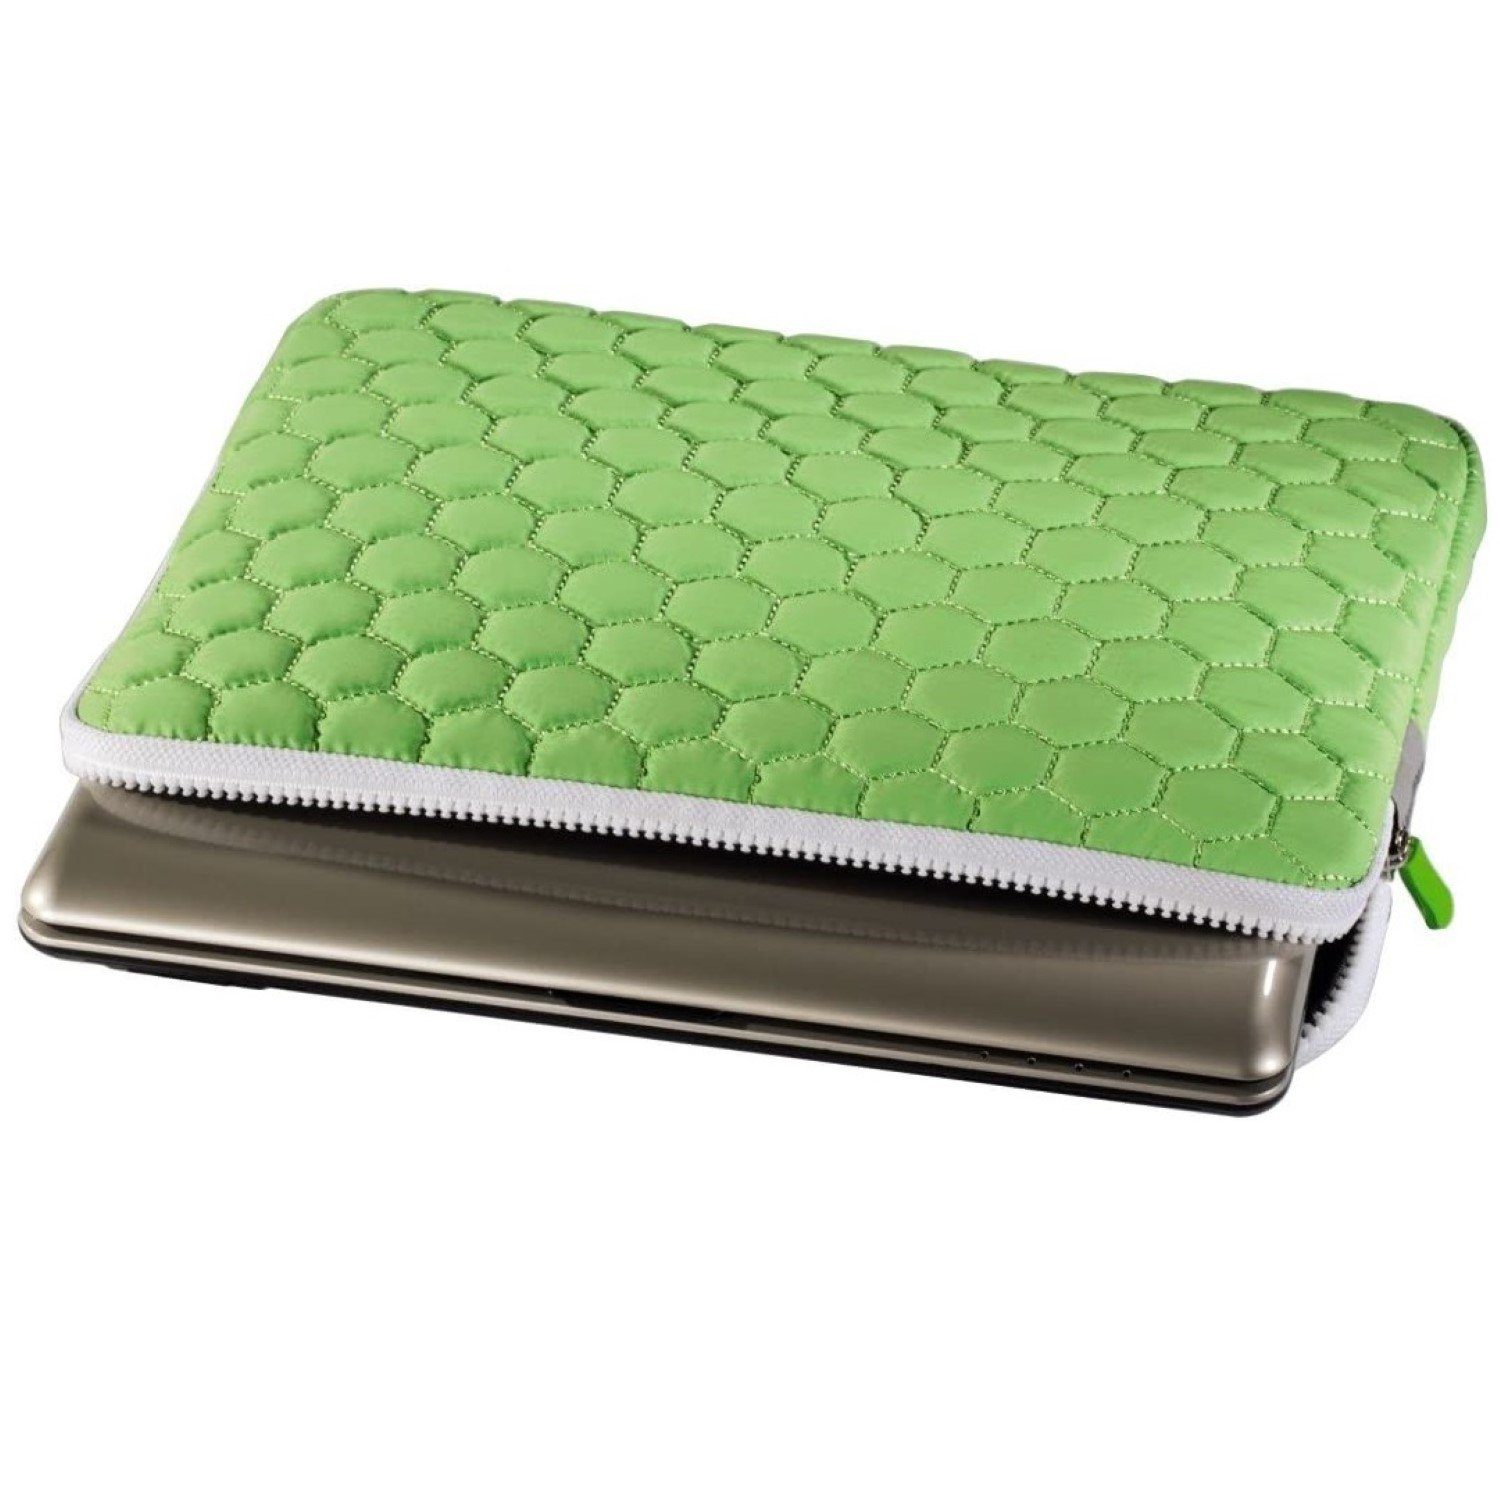 passend Case Schutz-Hülle Hama Laptop Notebook-Tasche 10" Grün, für 12,4" Cover bis Laptoptasche Sleeve